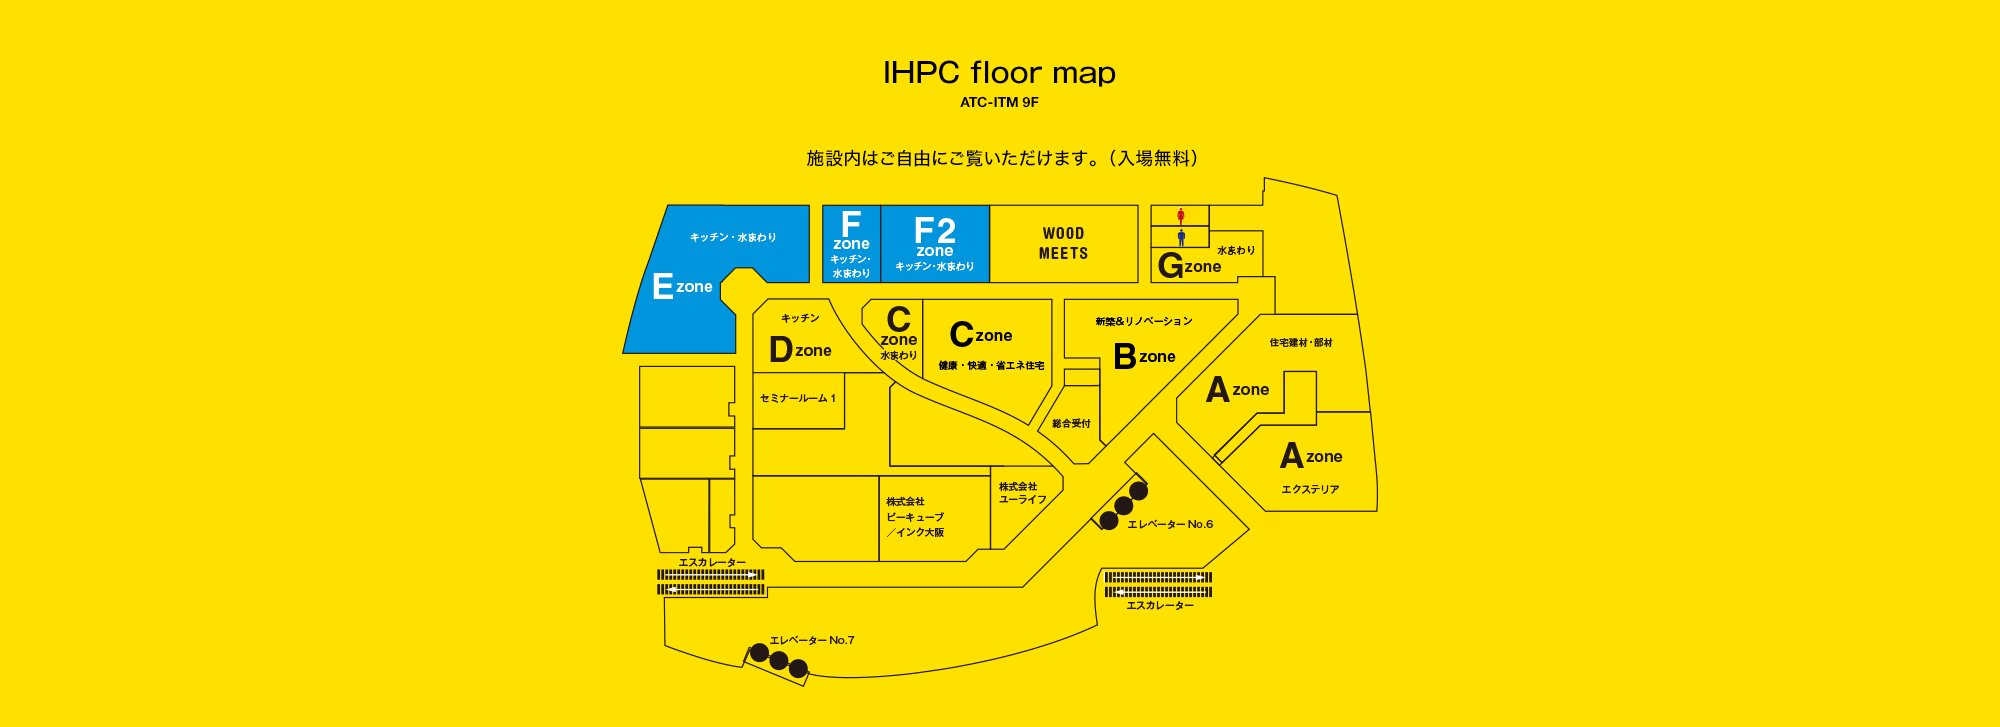 IHPC floor map(ATC-ITM 9F):施設内はご自由にご覧いただけます。